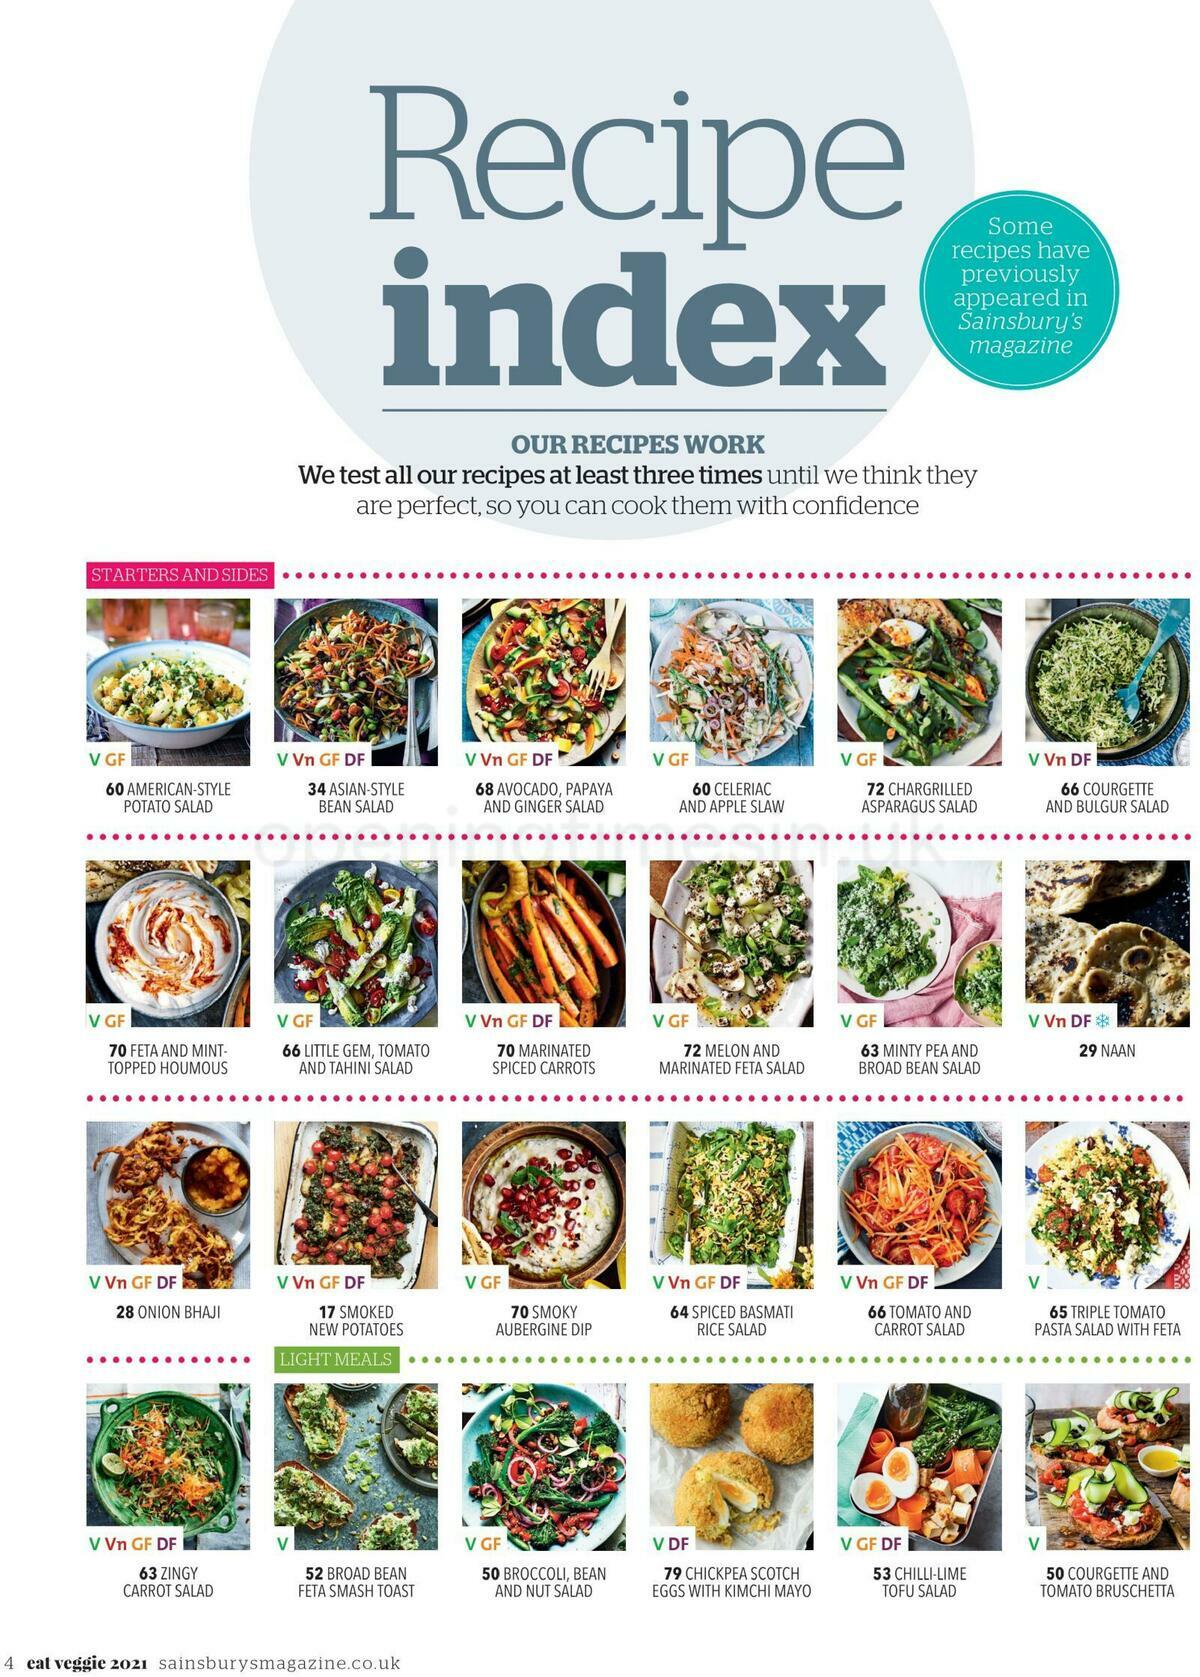 Sainsbury's Eat Veggie Magazine Offers from 20 June